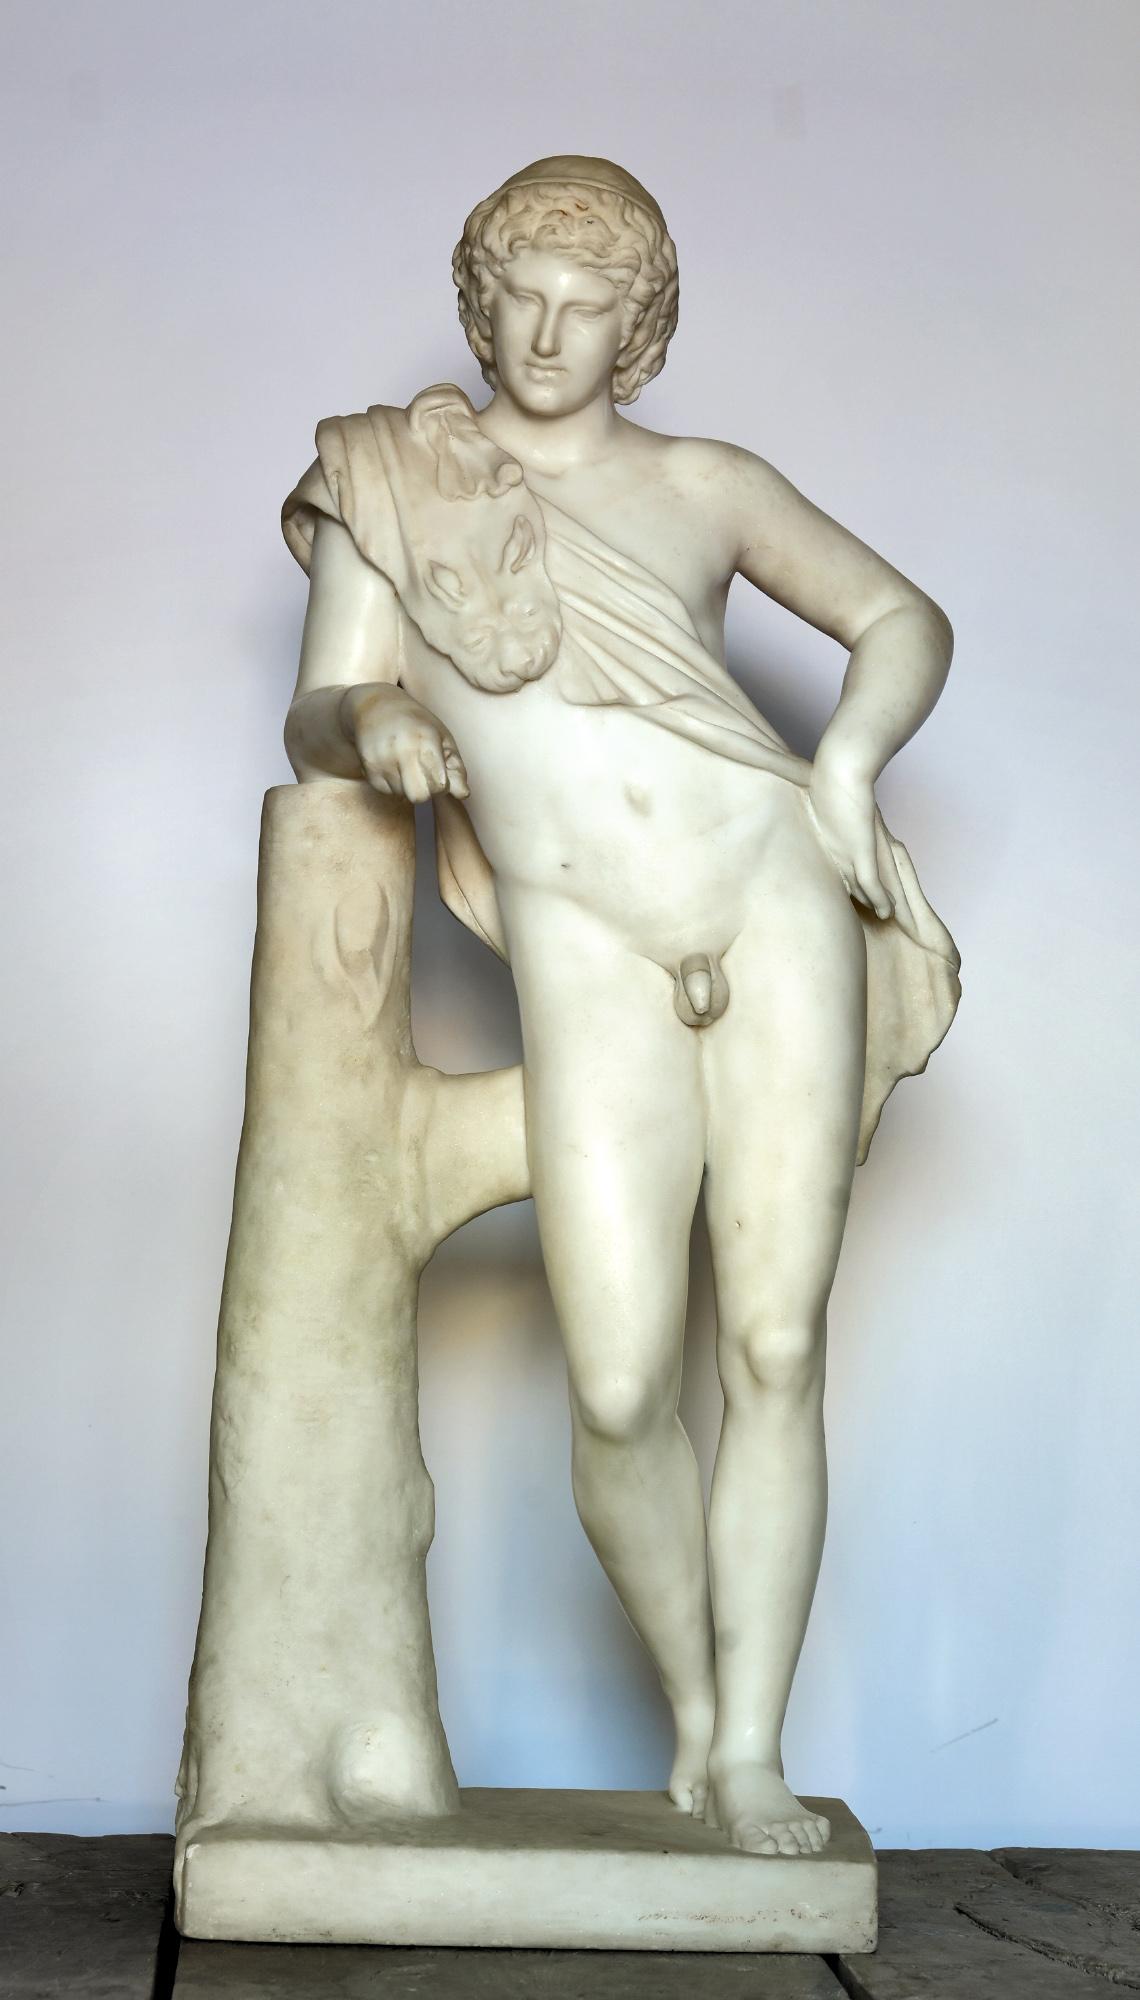 Die Statue ist sehr fein und in hoher Qualität aus Carrara-Marmor gefertigt. Sie wird um 1800 ausgearbeitet. In den Kapitolinischen Museen ist auch ein Exemplar aus der Zeit um 130 n. Chr. zu sehen

Der Statuentypus des ruhenden Satyrs zeigt einen